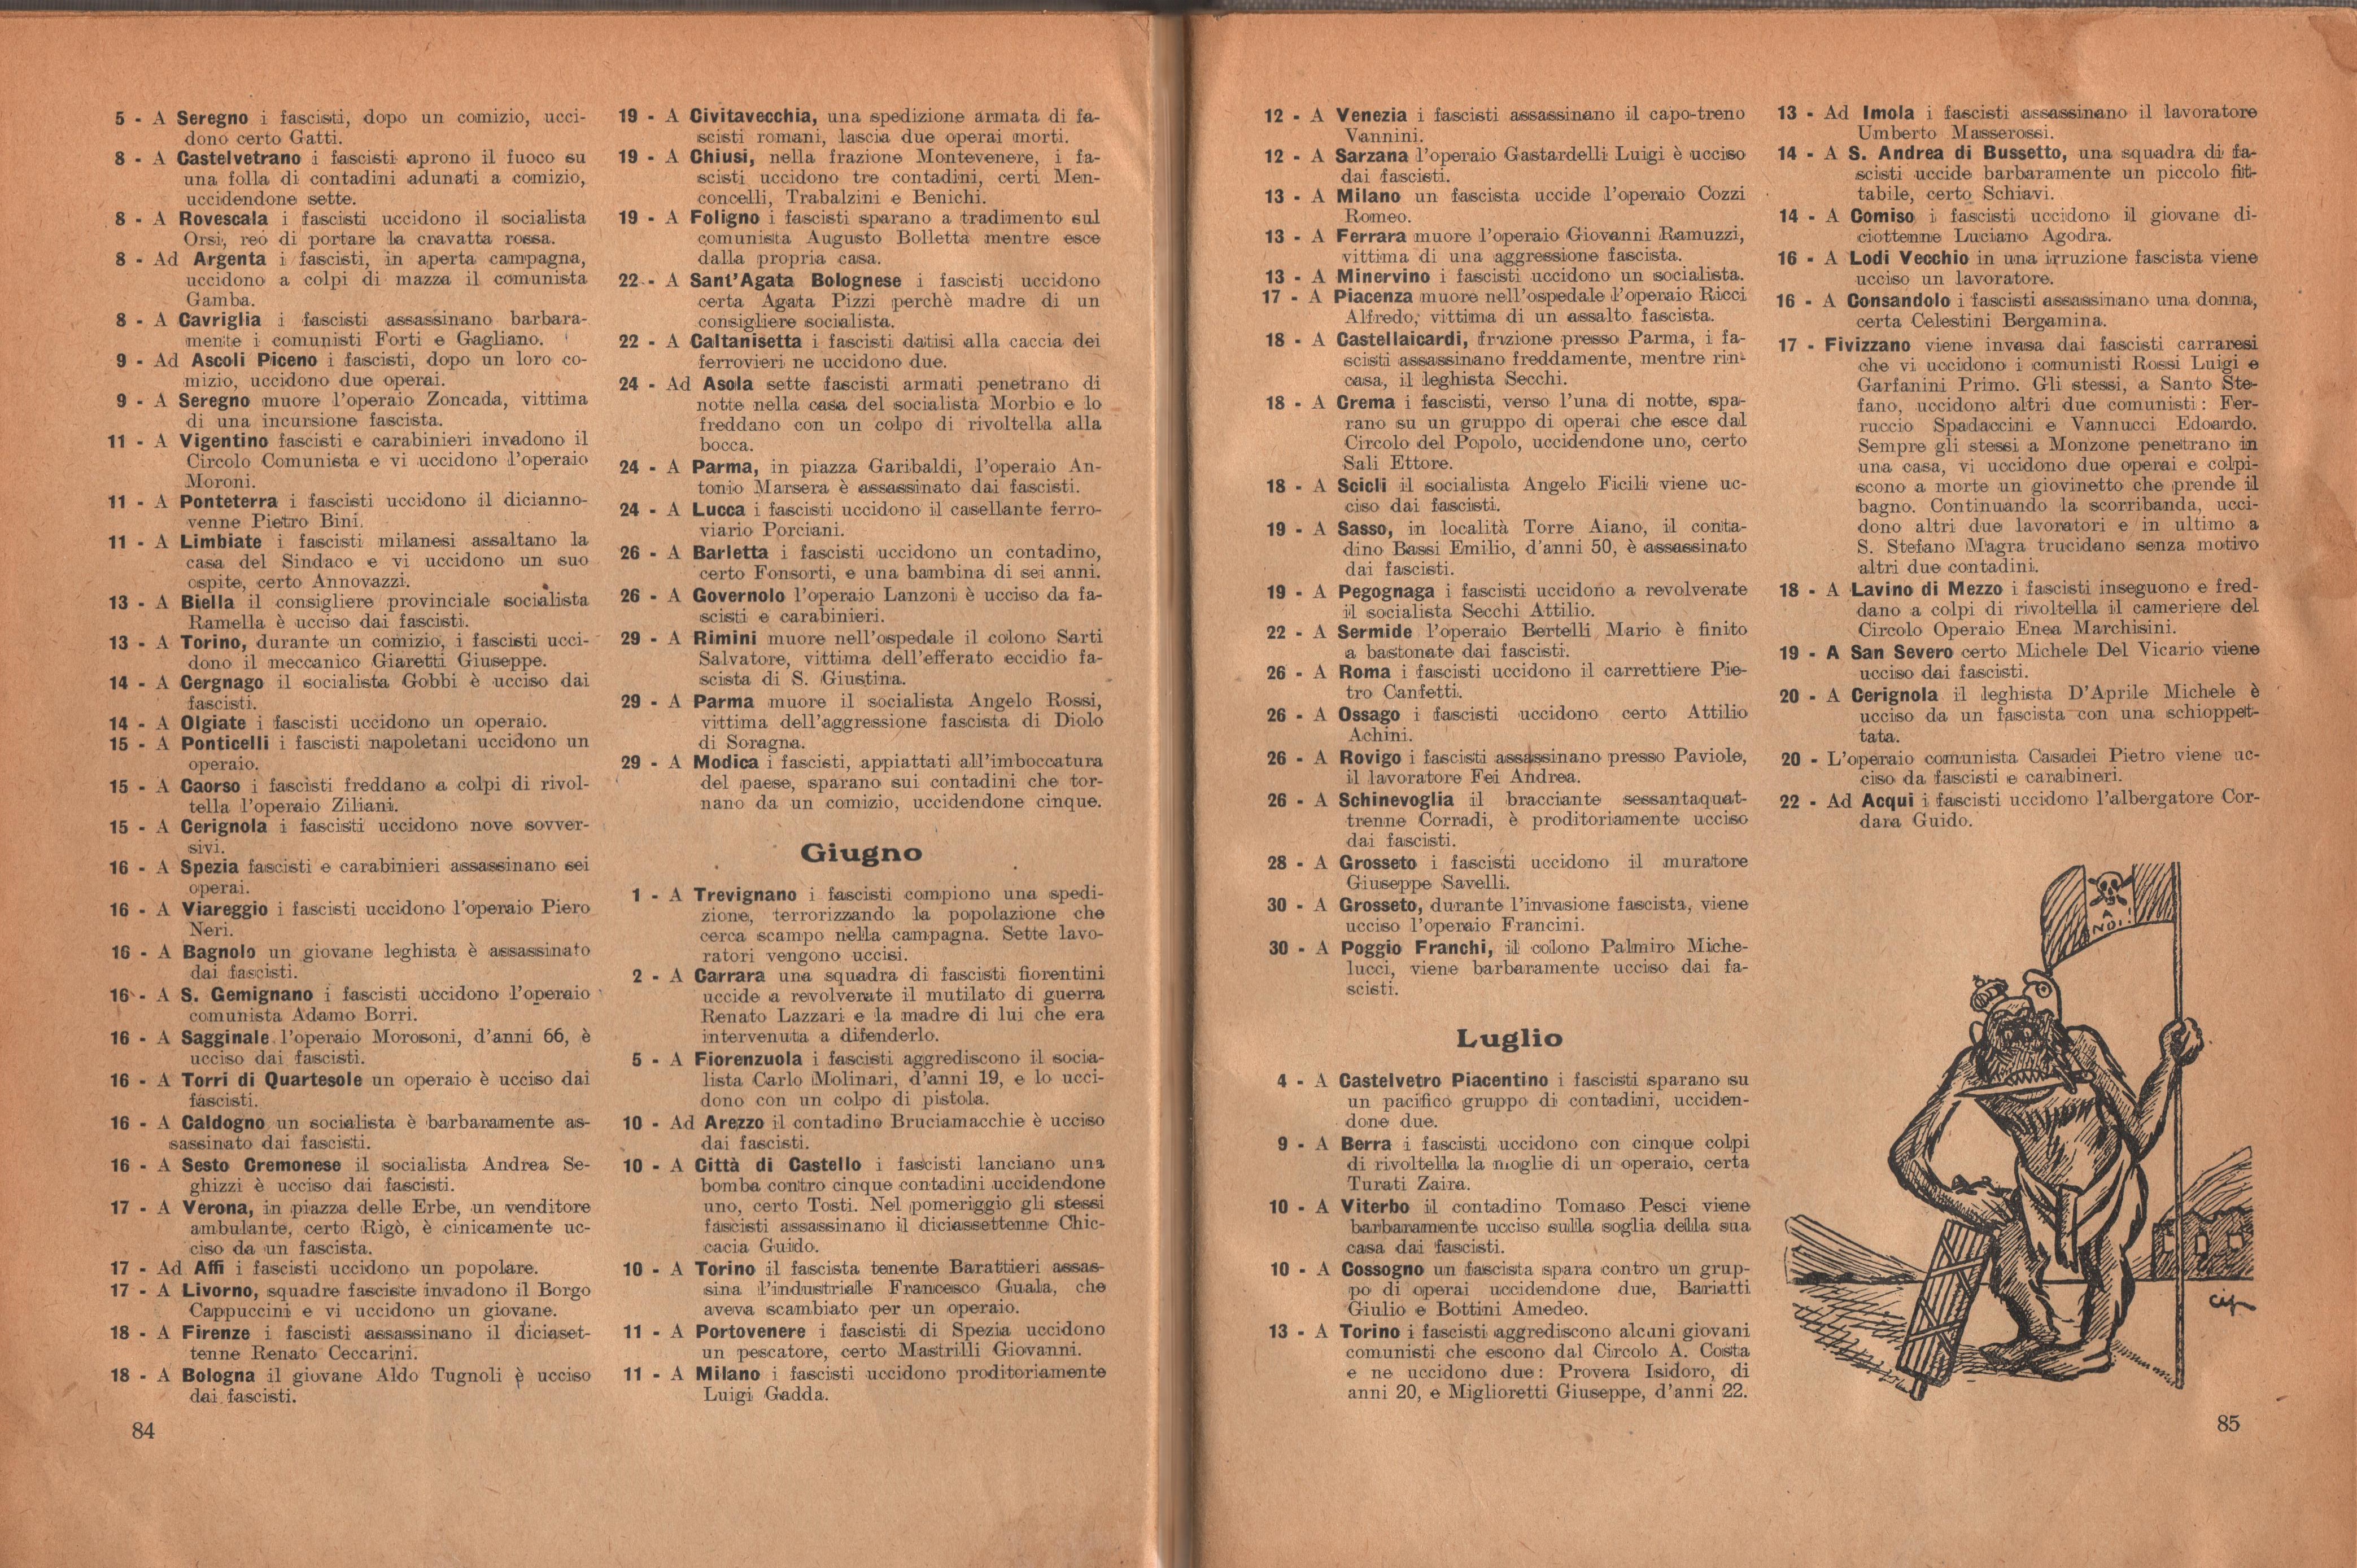 Almanacco comunista 1922 - pag. 51